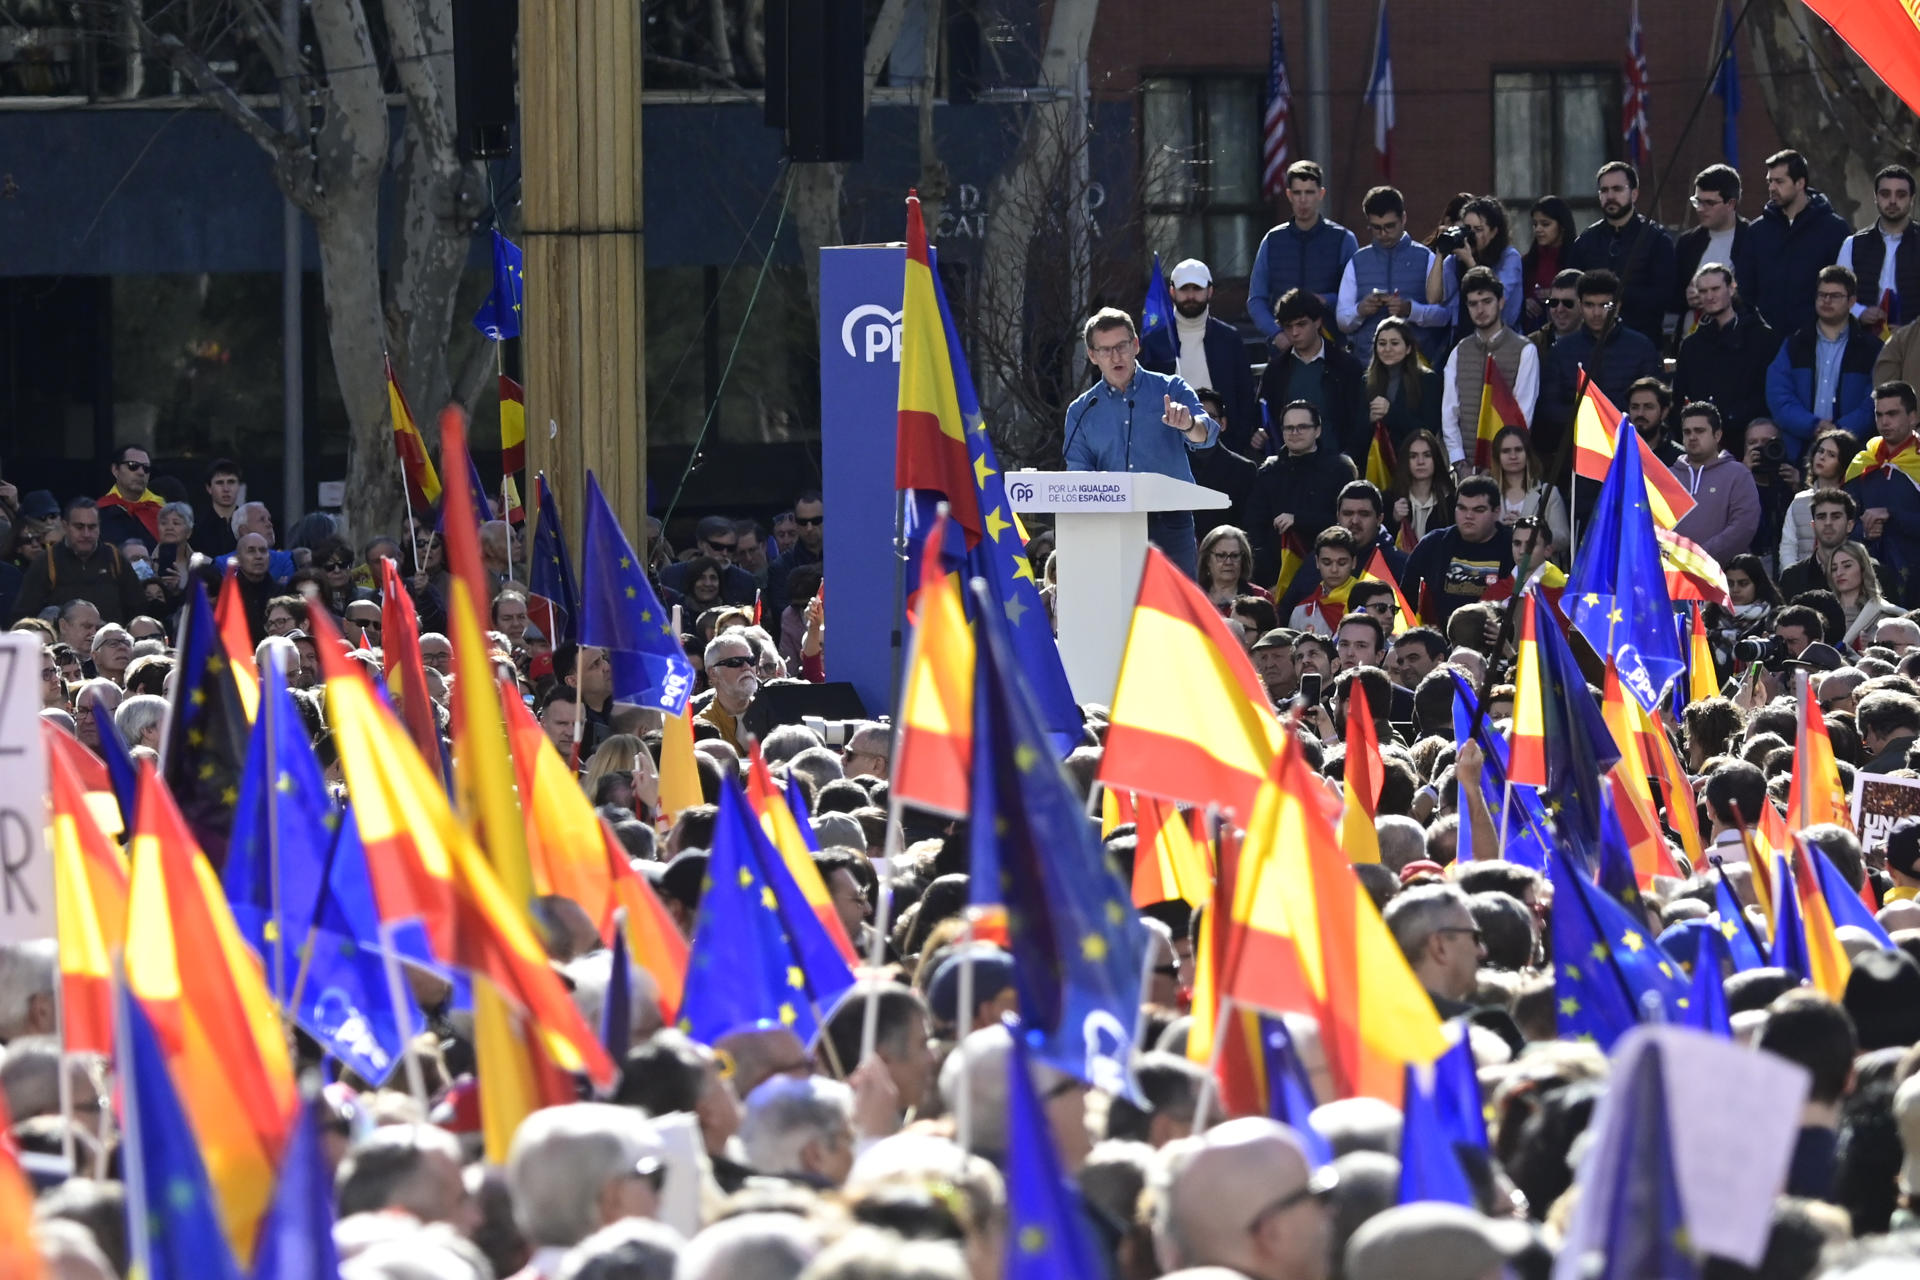 El PP vuelve a sacar a los ciudadanos a la calle contra la amnistía en Madrid